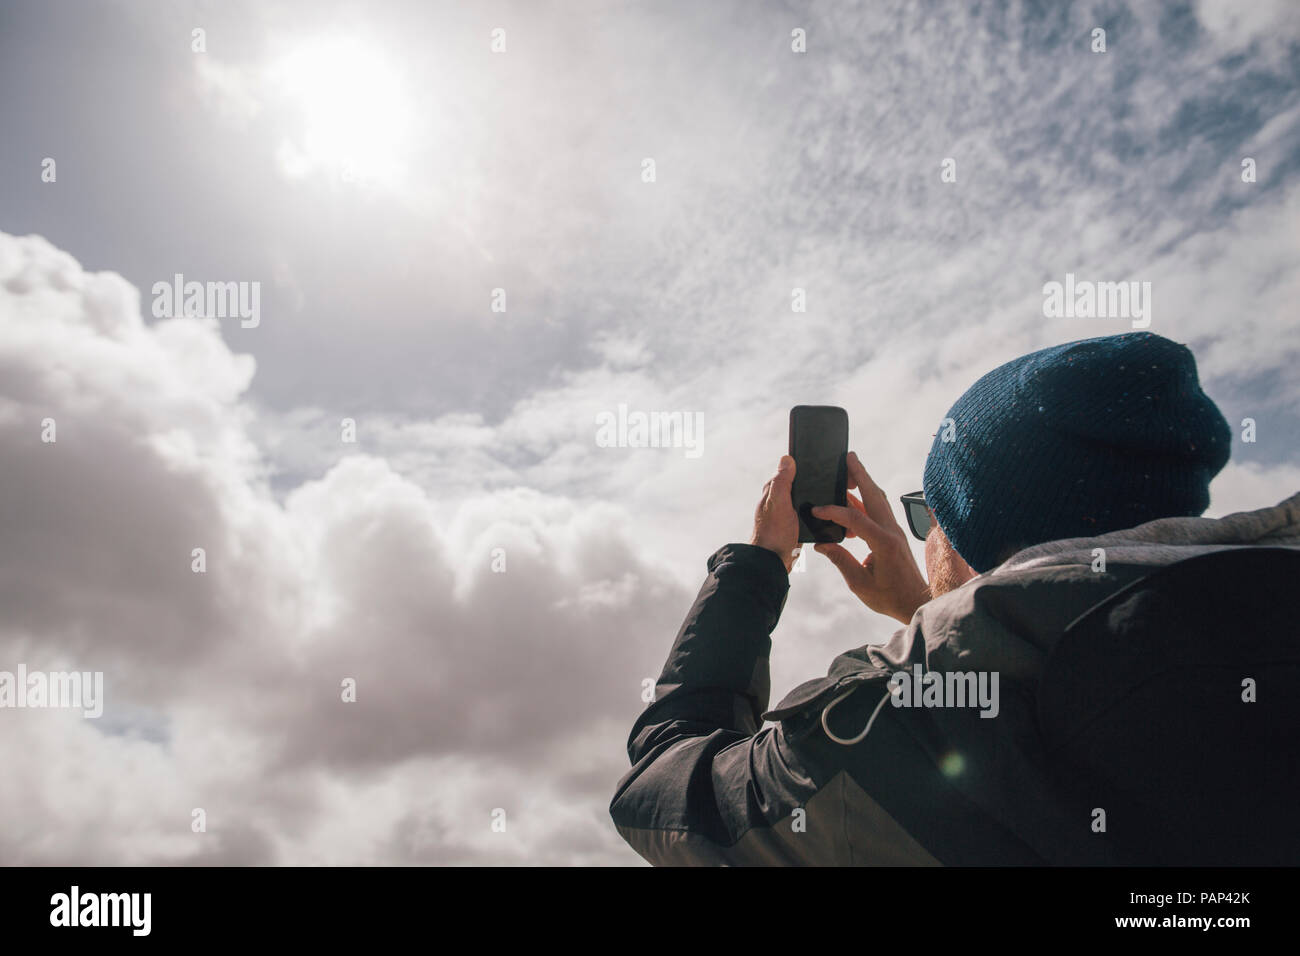 Man holding up téléphone cellulaire sous ciel ensoleillé avec des nuages Banque D'Images